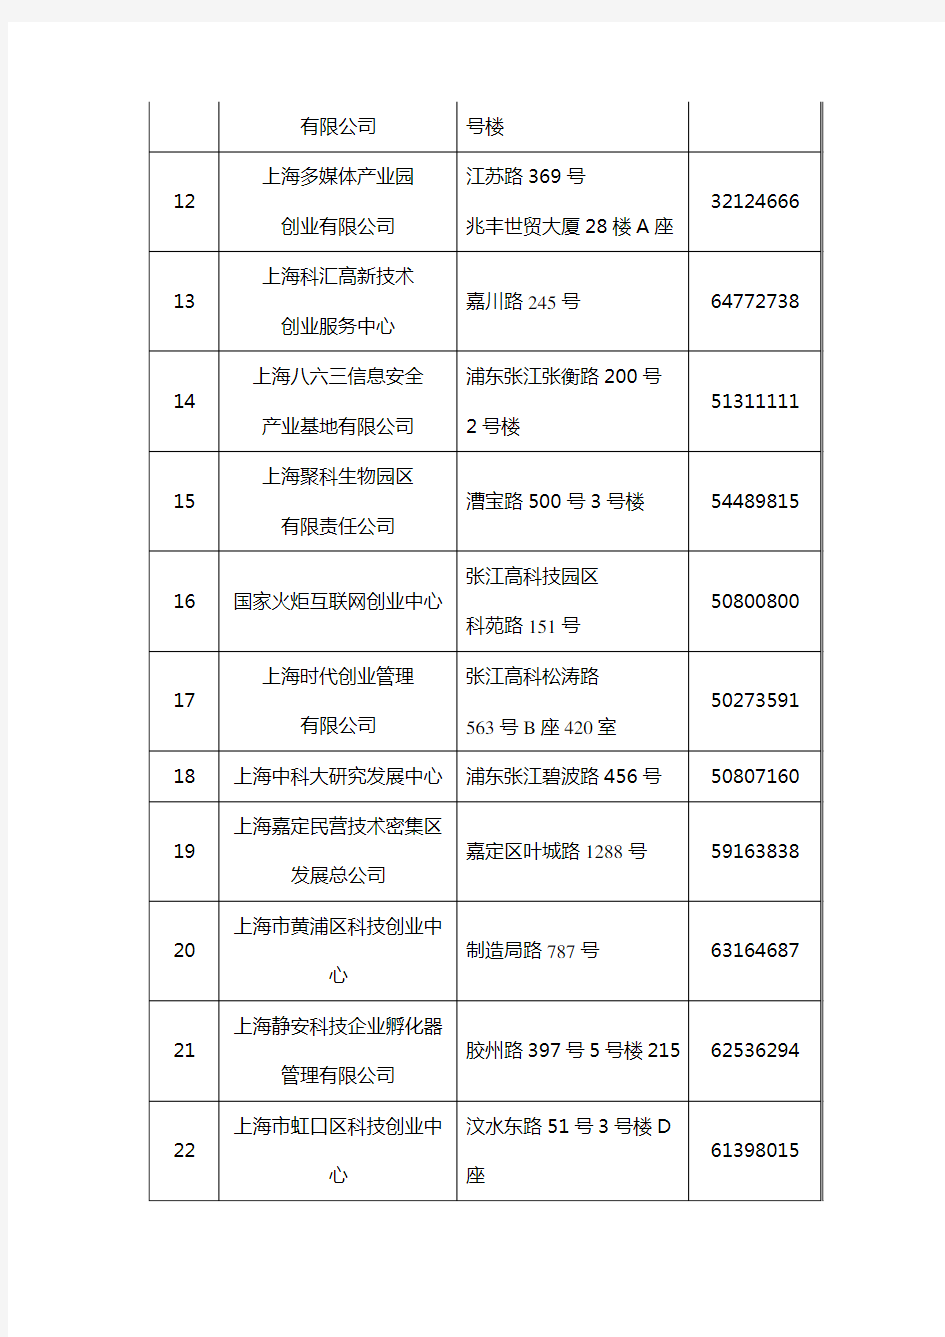 (完整word版)附录10上海科技企业孵化器名录